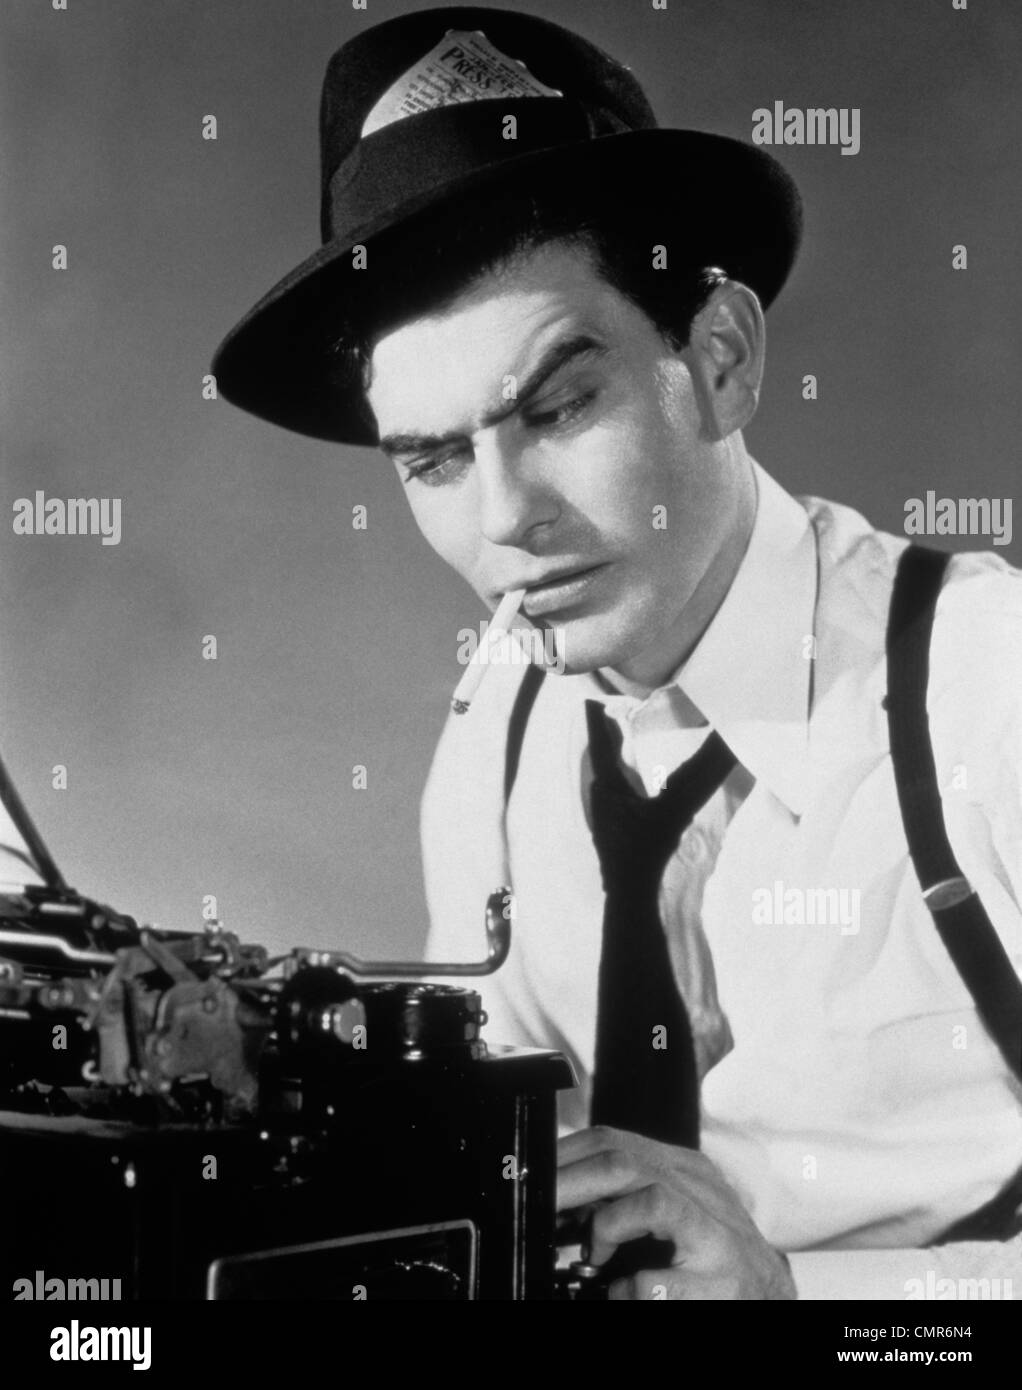 Negli anni quaranta anni cinquanta reporter uomo seduto alla macchina da scrivere Sigaretta fumare Premere PASS IN HATBAND Foto Stock